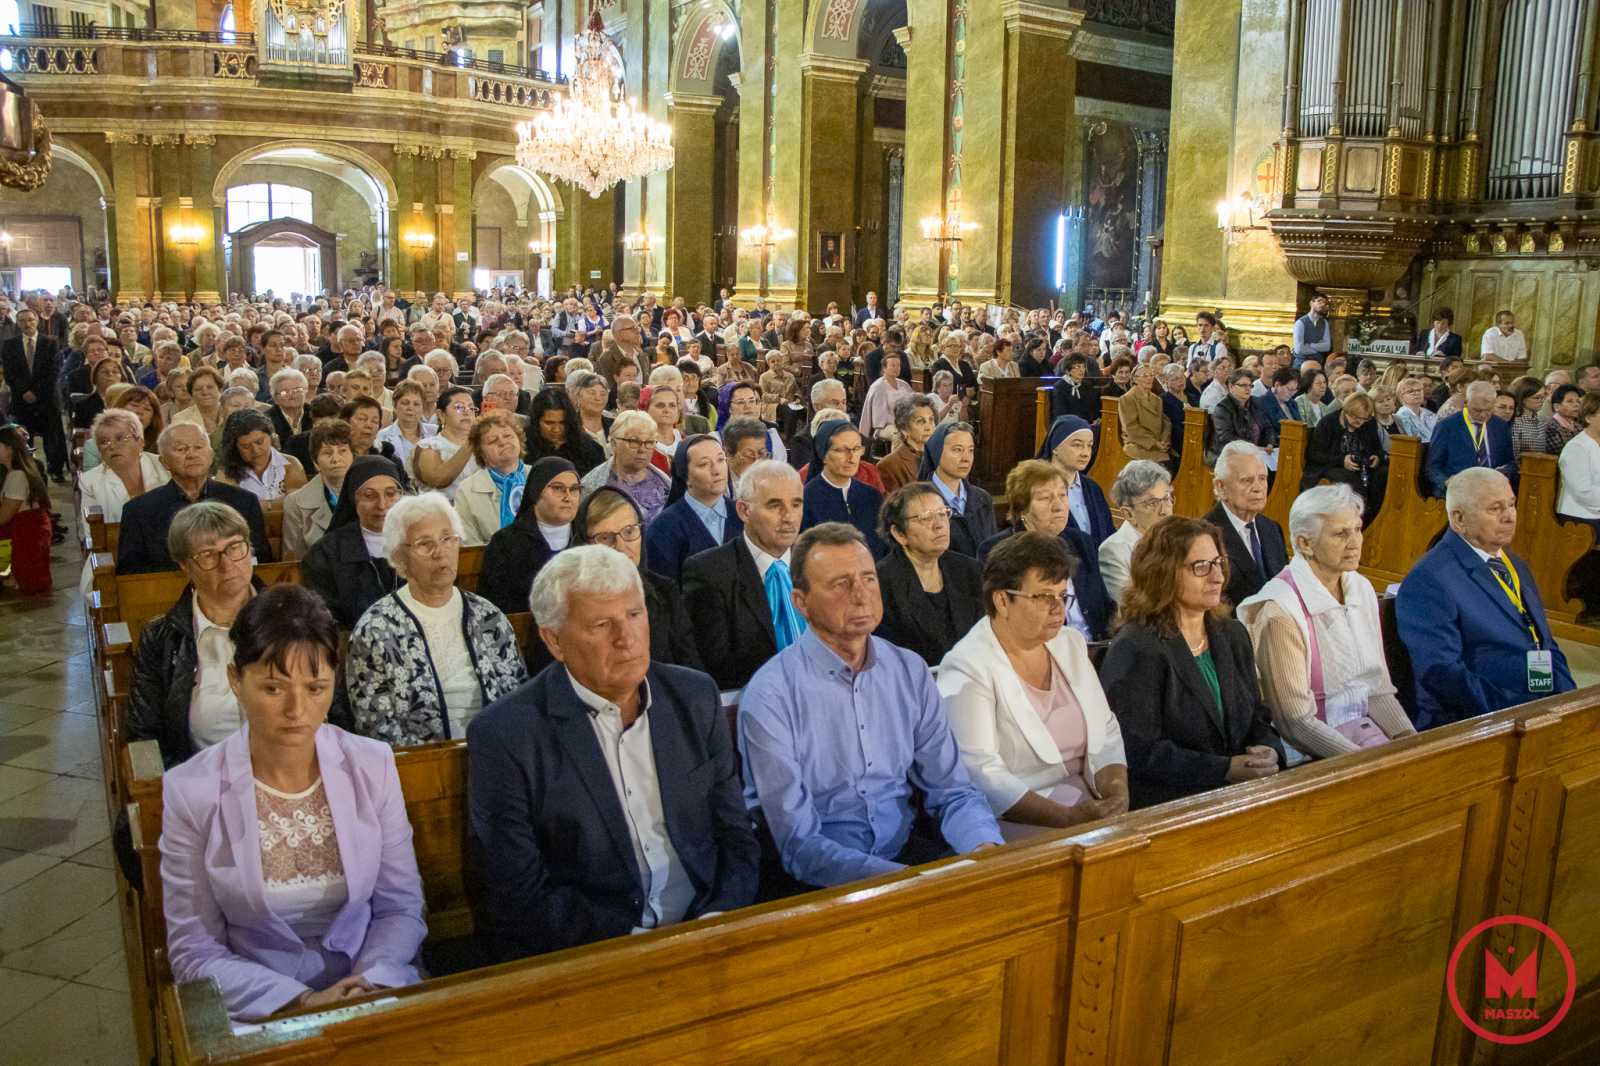 Ritkán látni ennyire tele az impozáns istenházát. Az egyházmegye valamennyi szegletéből érkeztek hívek az ünnepségre, amely évente a váradi magyarok egyik legkiemelkedőbb eseménye is.